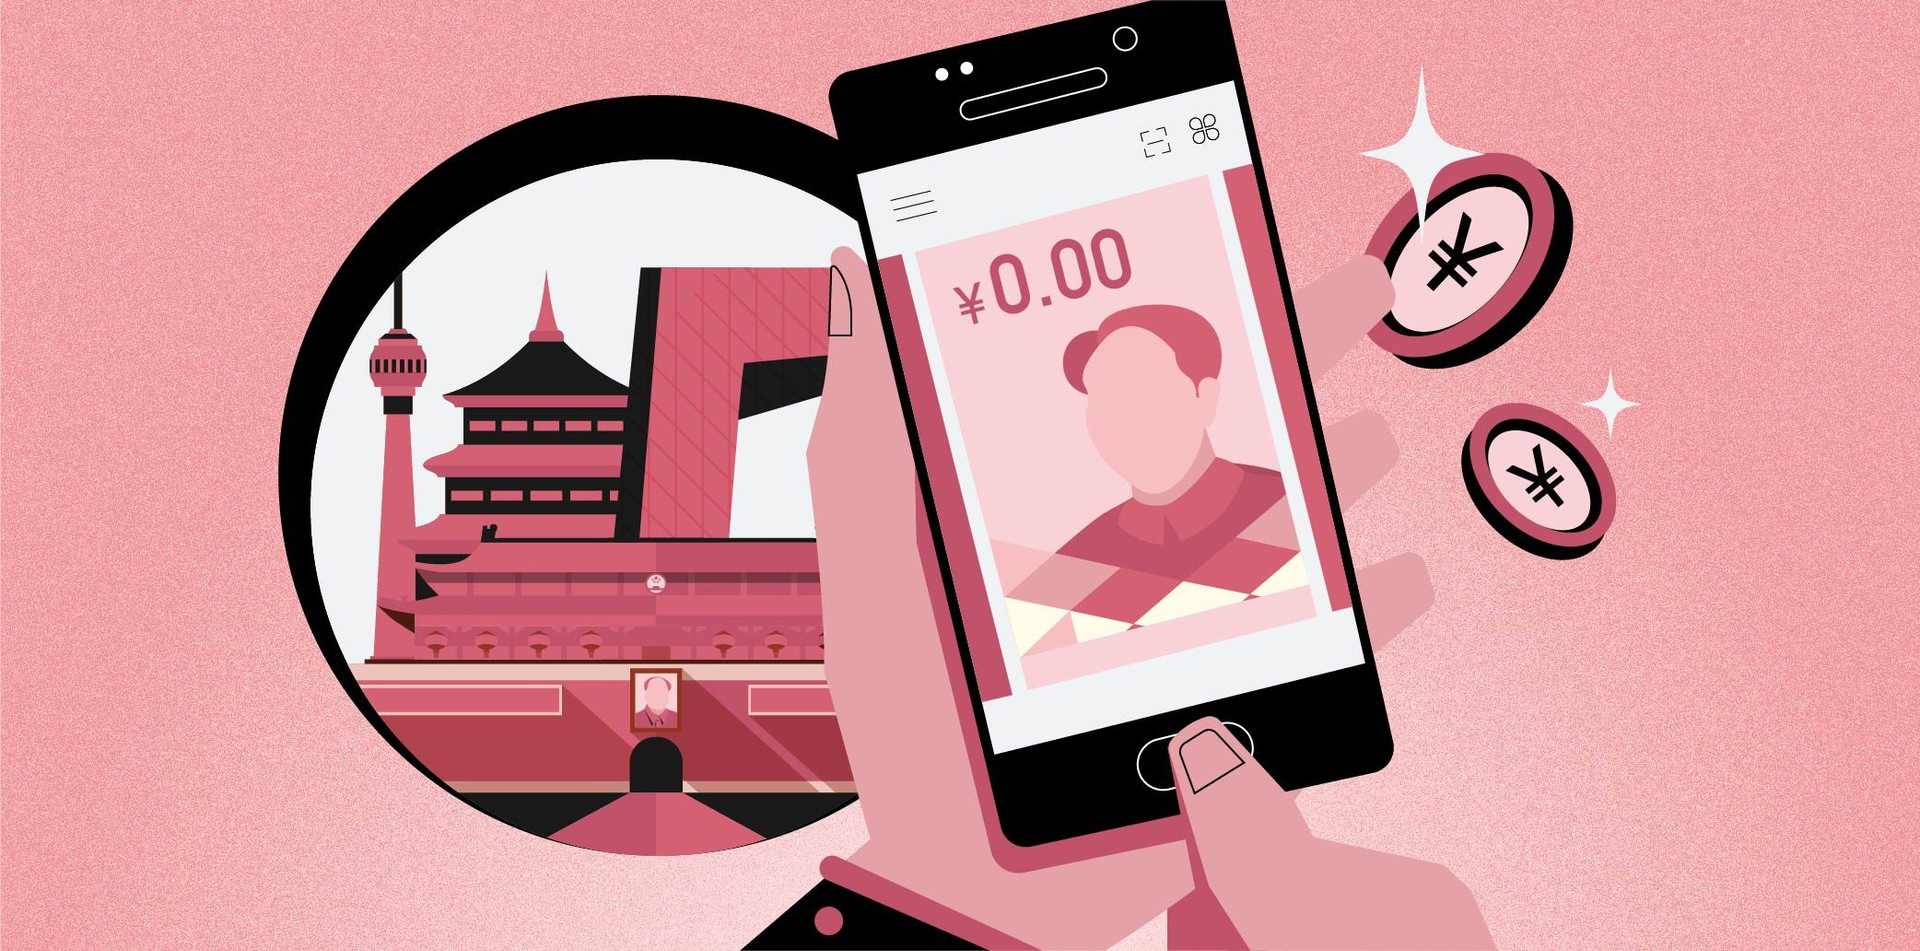 Trung Quốc: Điện thoại hết pin, không có internet vẫn thanh toán được bằng Nhân dân tệ điện tử